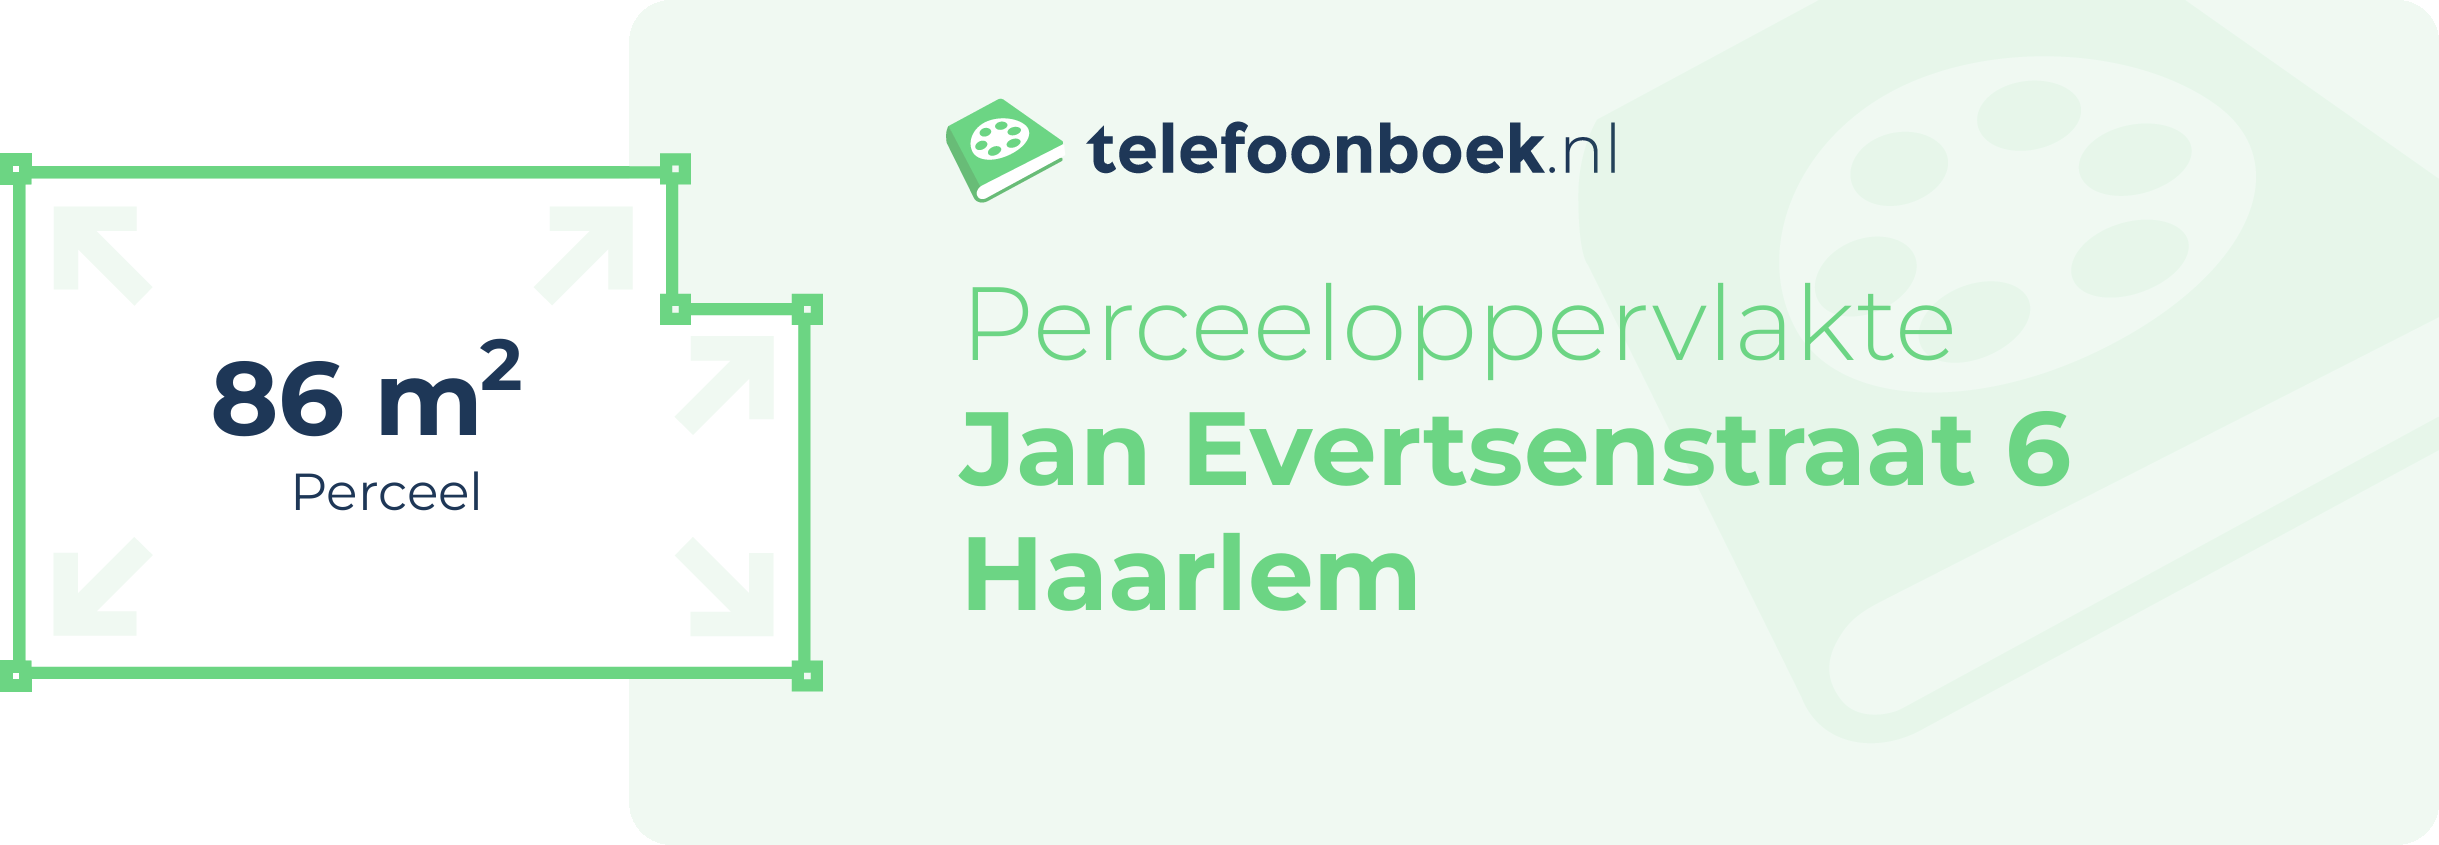 Perceeloppervlakte Jan Evertsenstraat 6 Haarlem